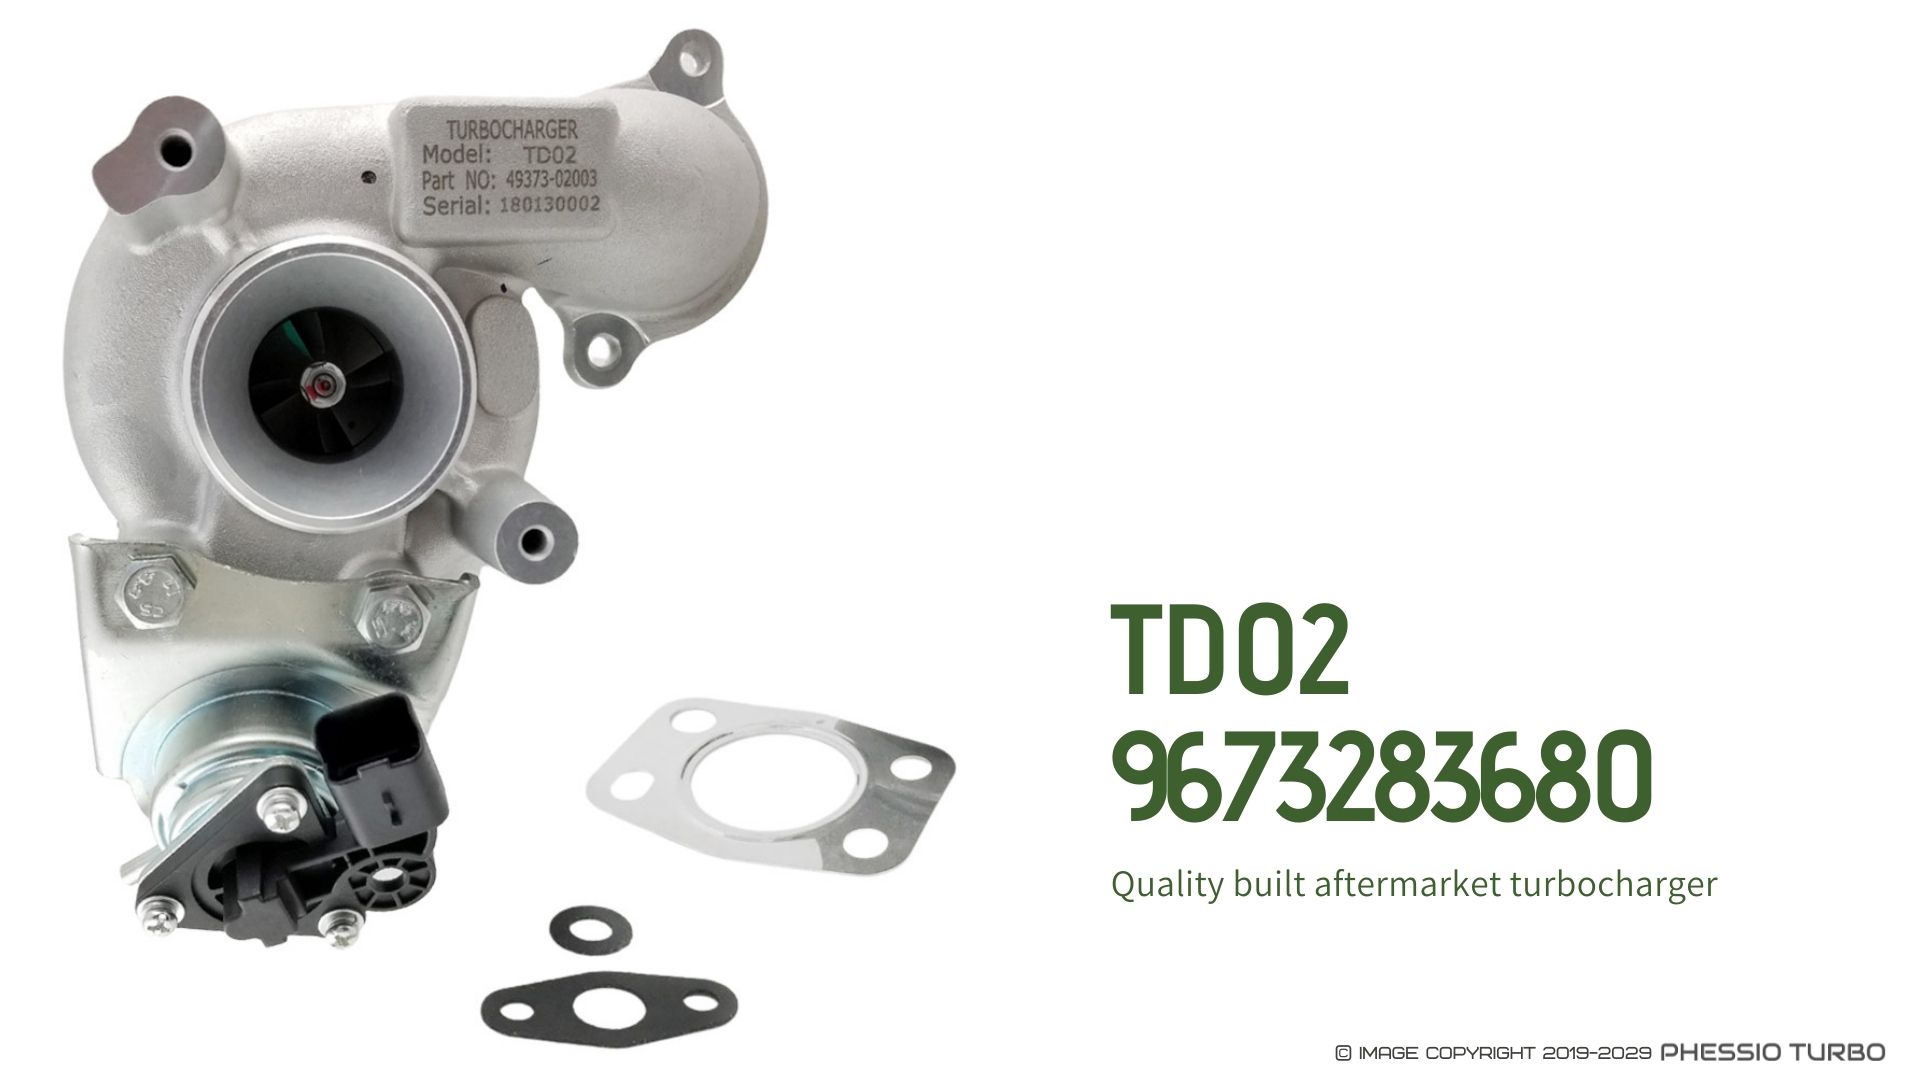 Bisenya Actionneur turbocompresseur compatible avec 207 208 308 Berlingo C3 C4 9673283680 0375.Q9 49373-02002